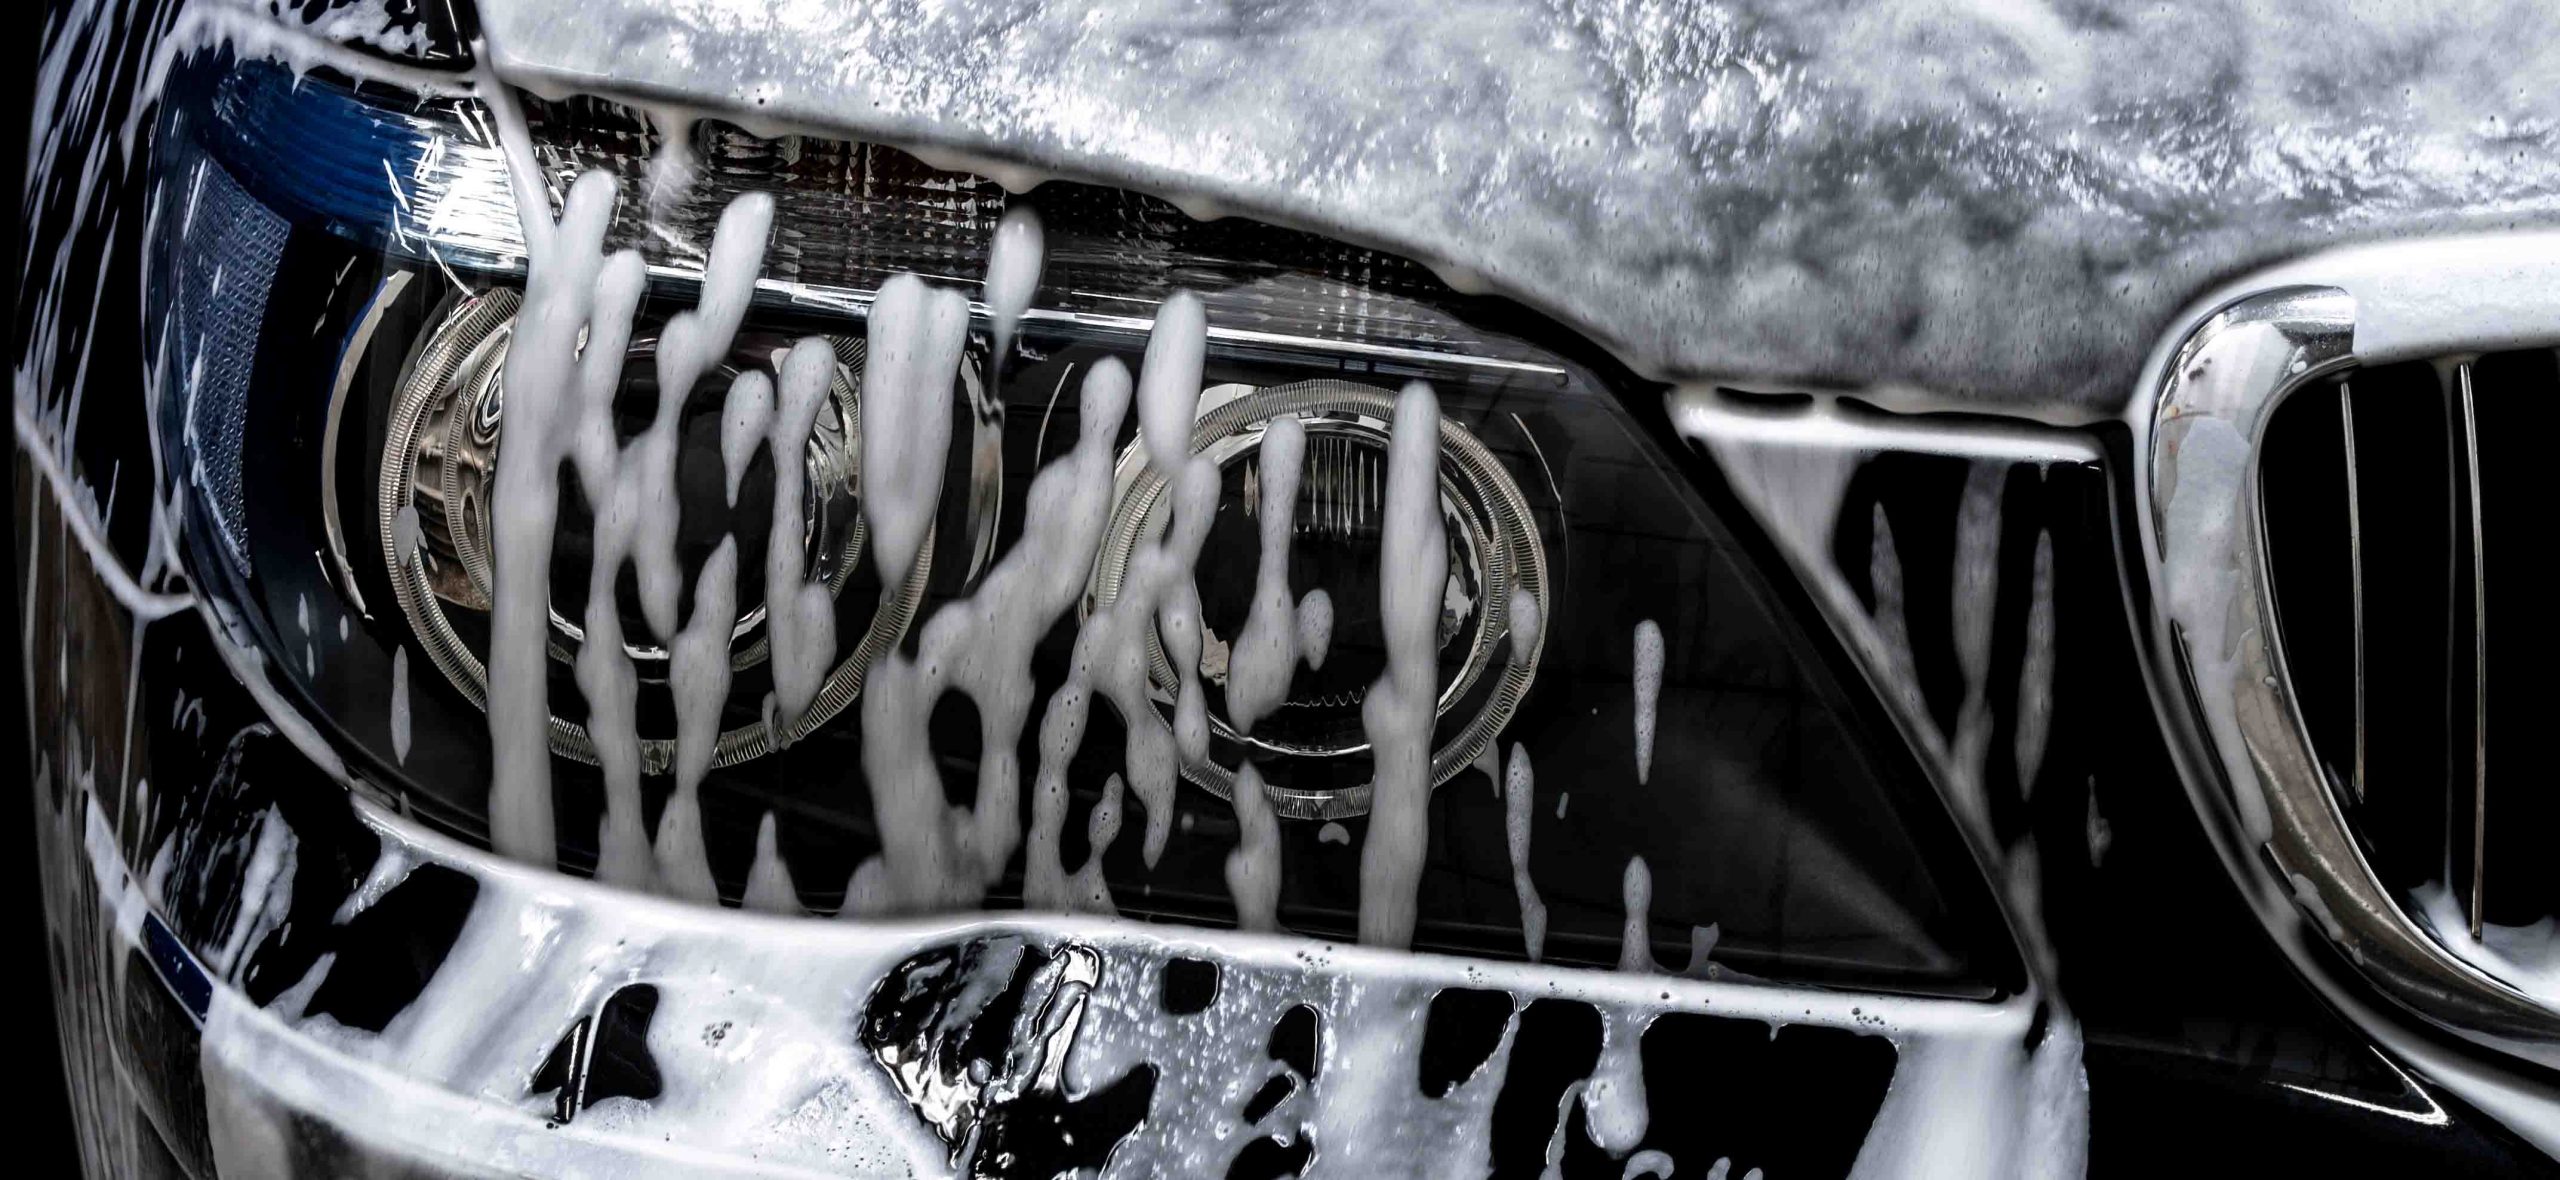 Fotografija prikazuje ročno zunanje čiščenje avtomobila, ki zajema tudi čiščenje s peno in zaščito podvozja.